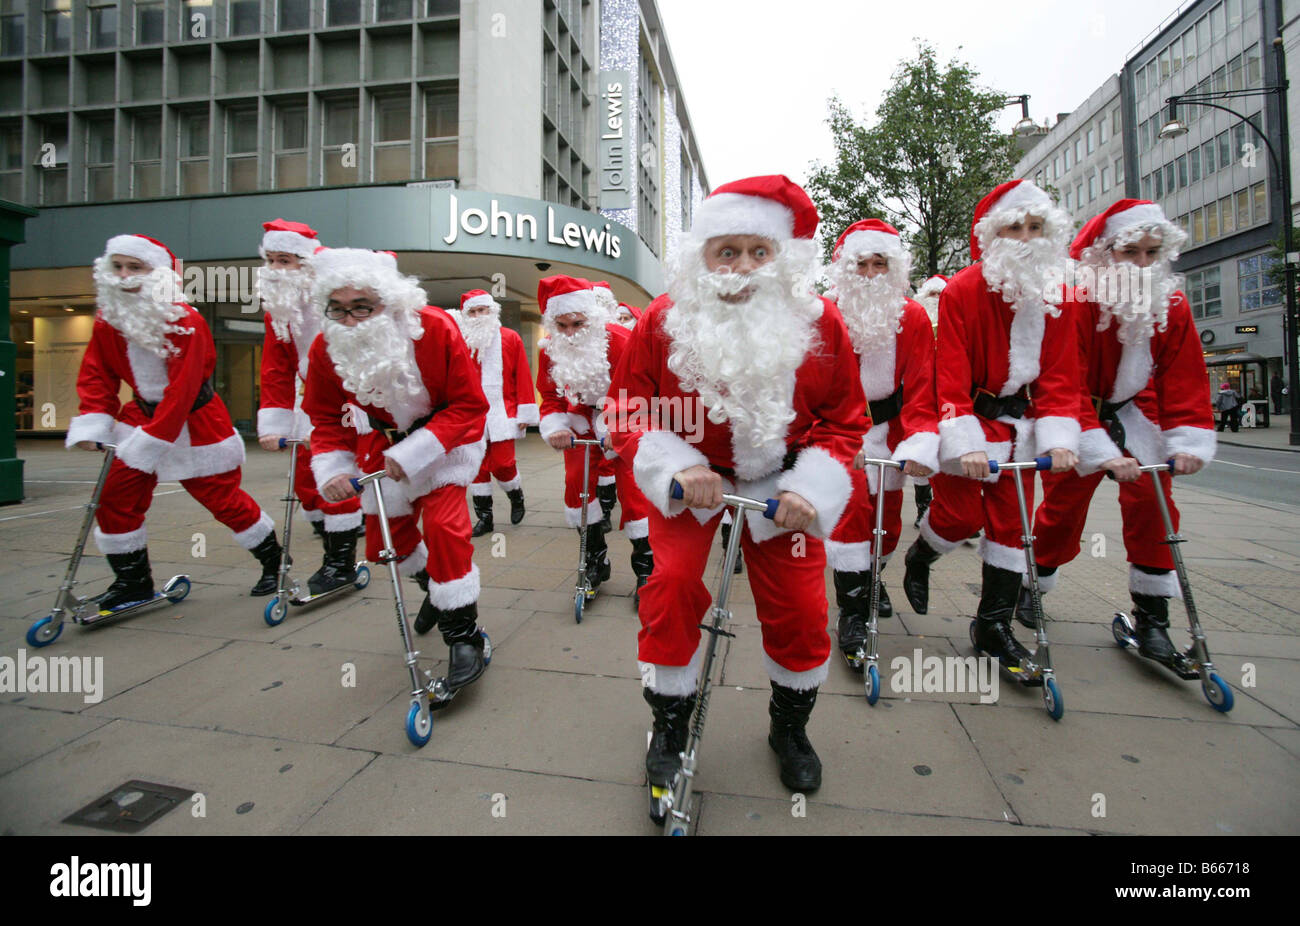 Weihnachtsmänner auf Rollern übernehmen s West End in London Verkehr kostenlos Shopping-Tag angekündigt für 6. Dezember 2008 starten Stockfoto